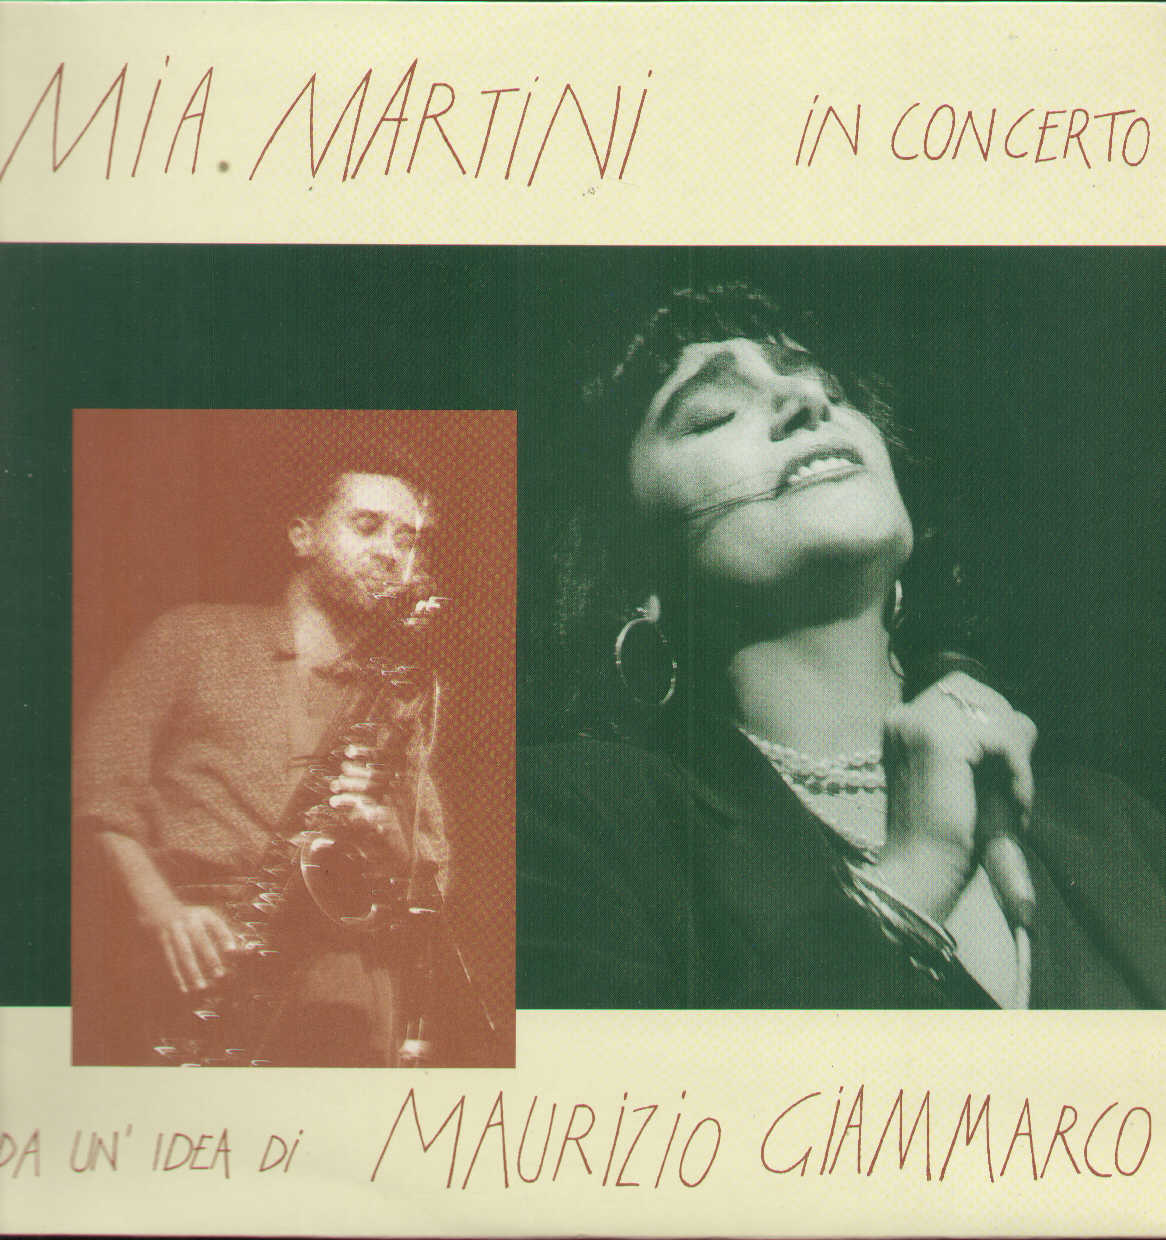 Rubrica, DISCOTECHÈ. “Mia Martini in concerto” di Mia Martini